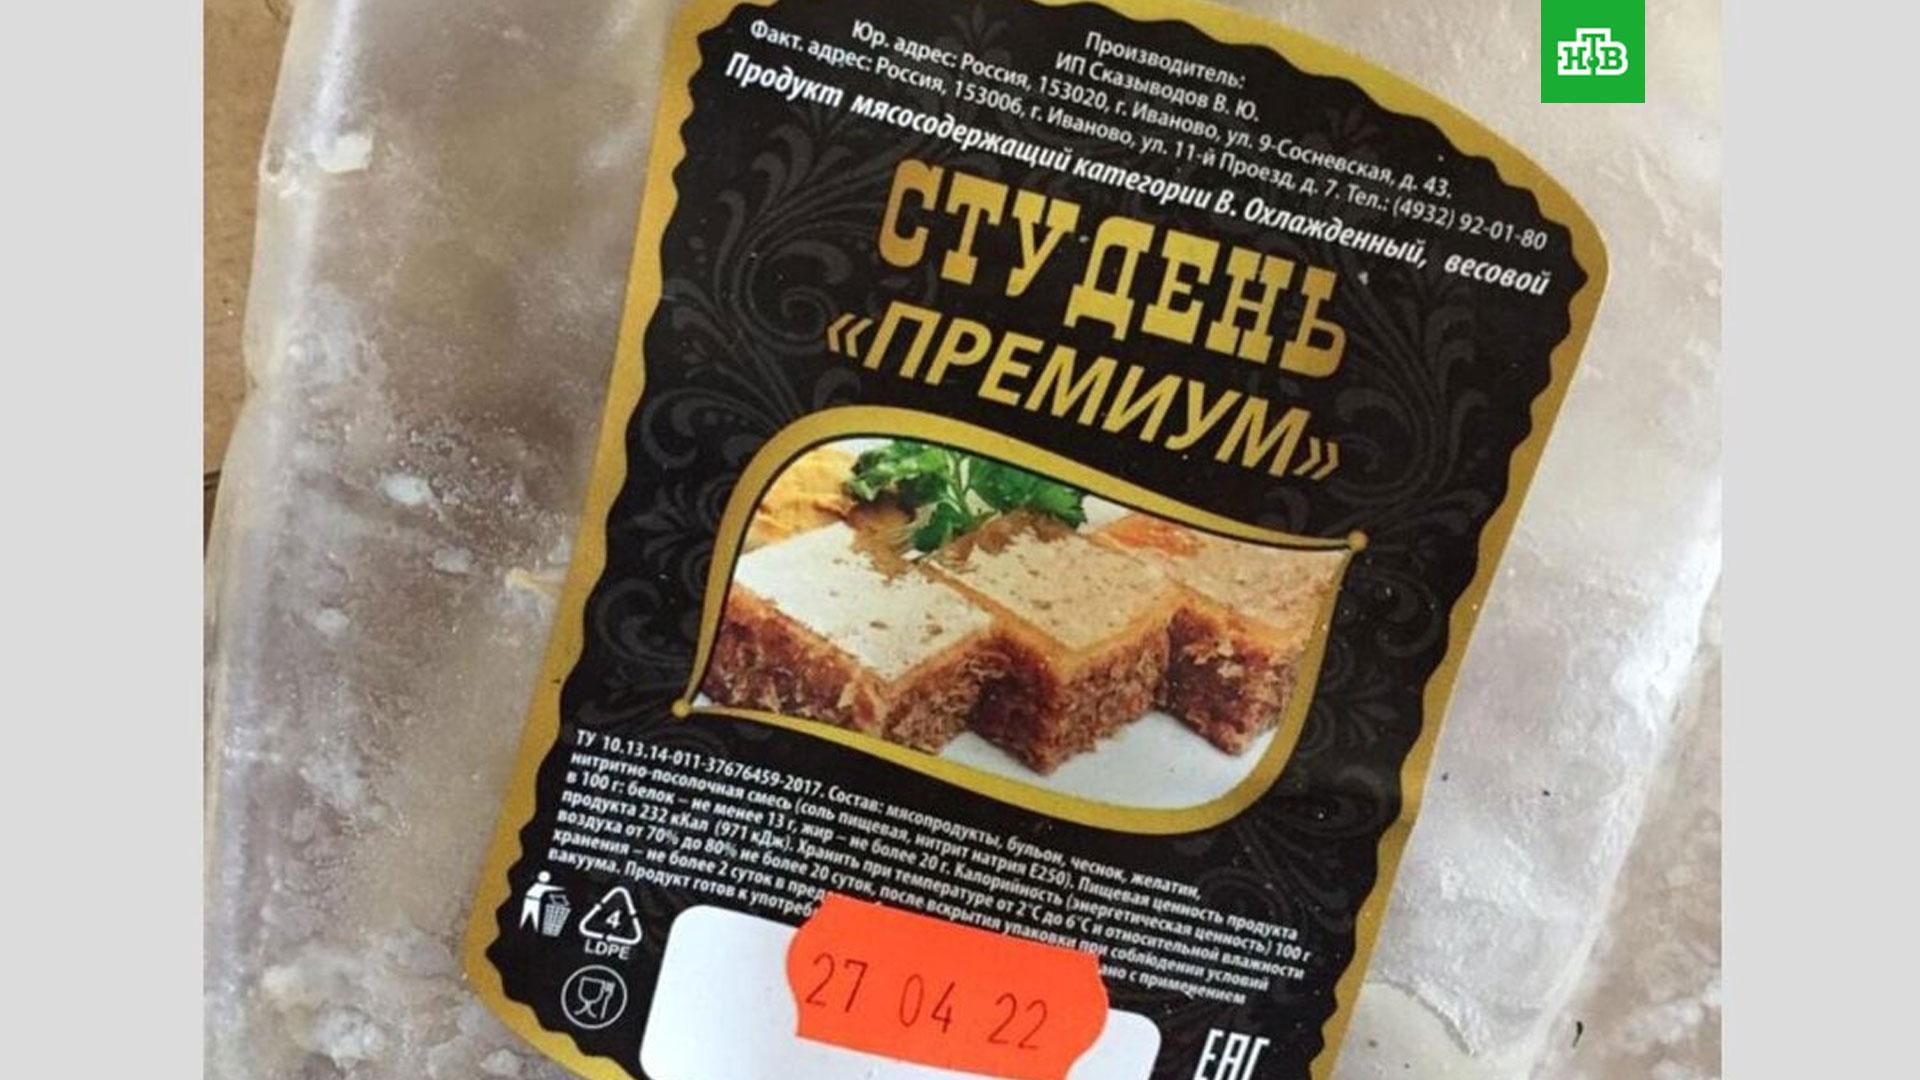 Якутян предупреждают об опасной мясной продукции